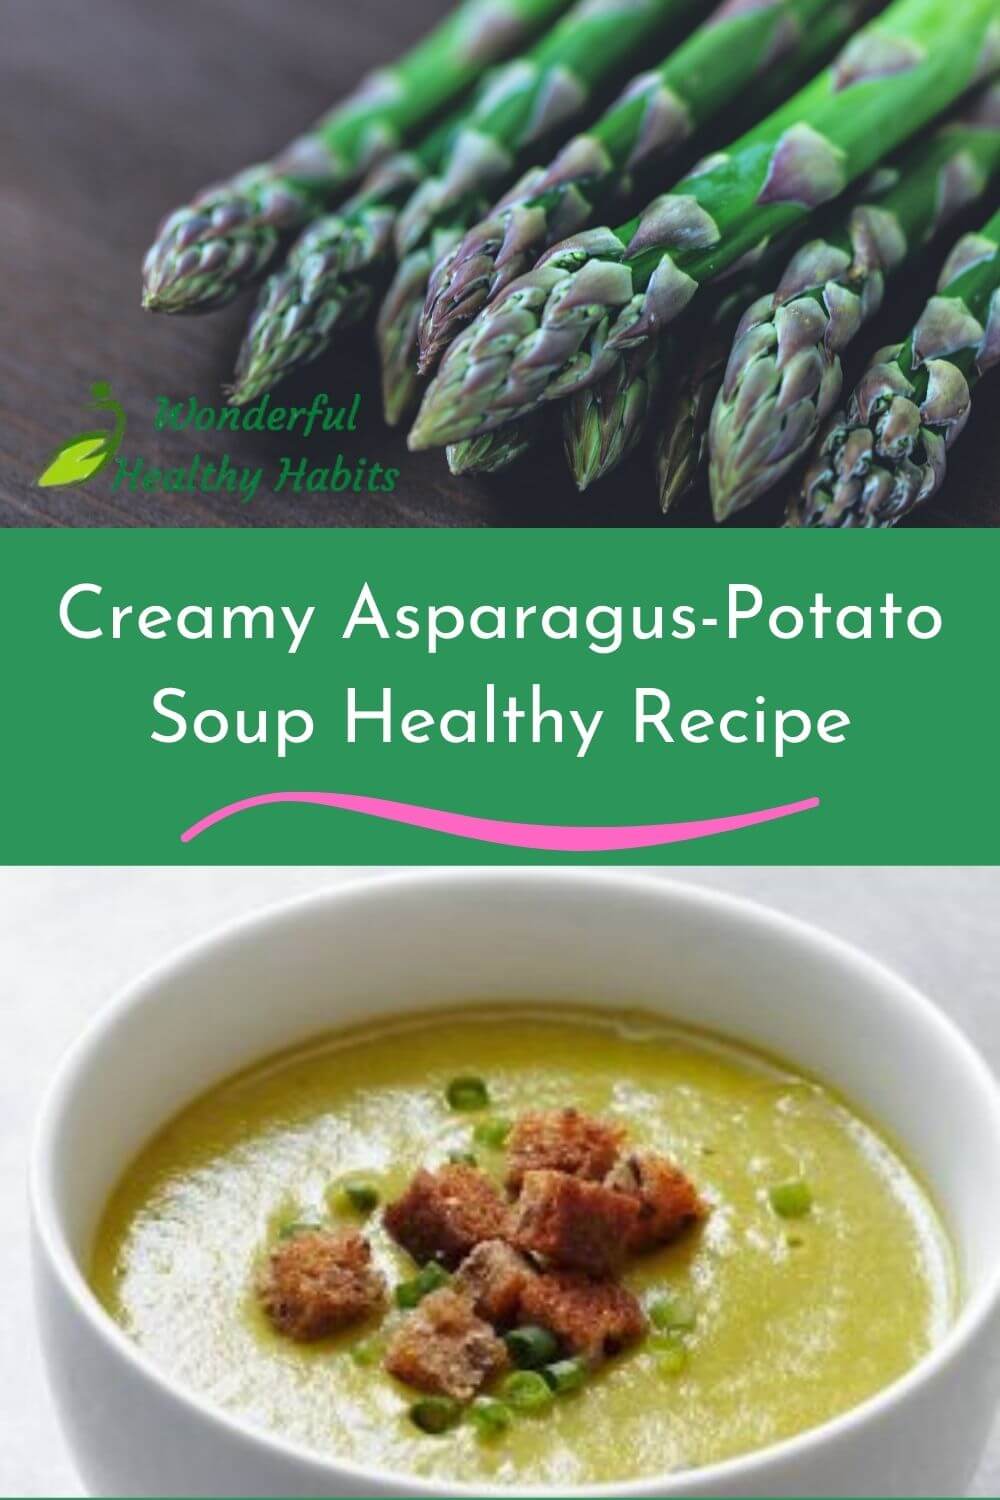 Creamy Asparagus-Potato Soup Healthy Recipe